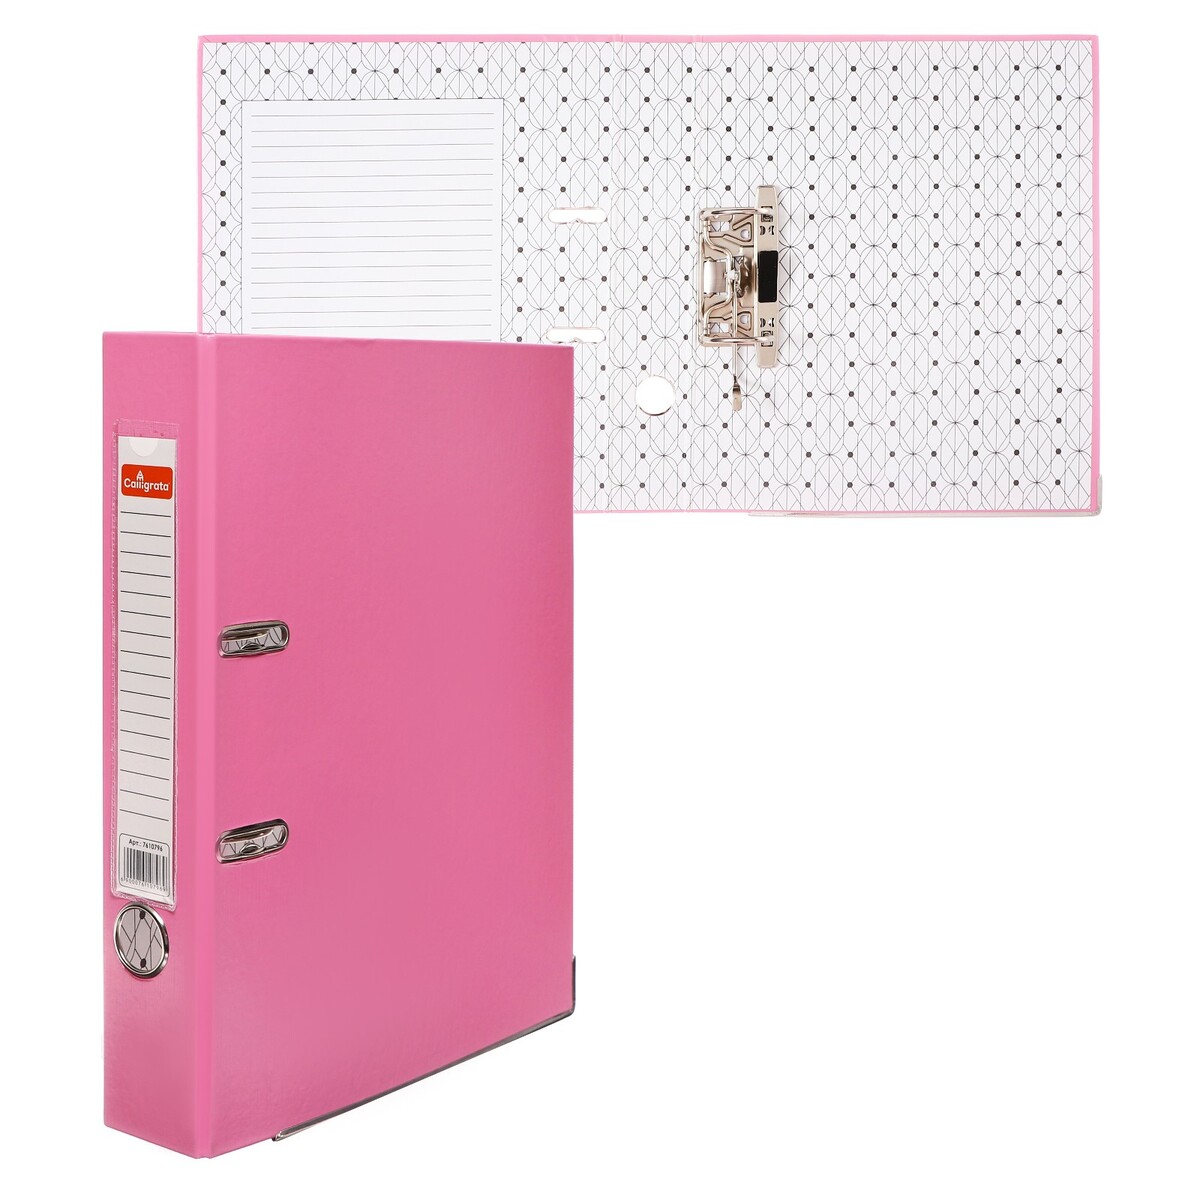 Папка-регистратор а4, 50 мм, calligrata, полипропилен, металлическая окантовка, карман на корешок, собранная, розовая папка регистратор а4 50 мм calligrata